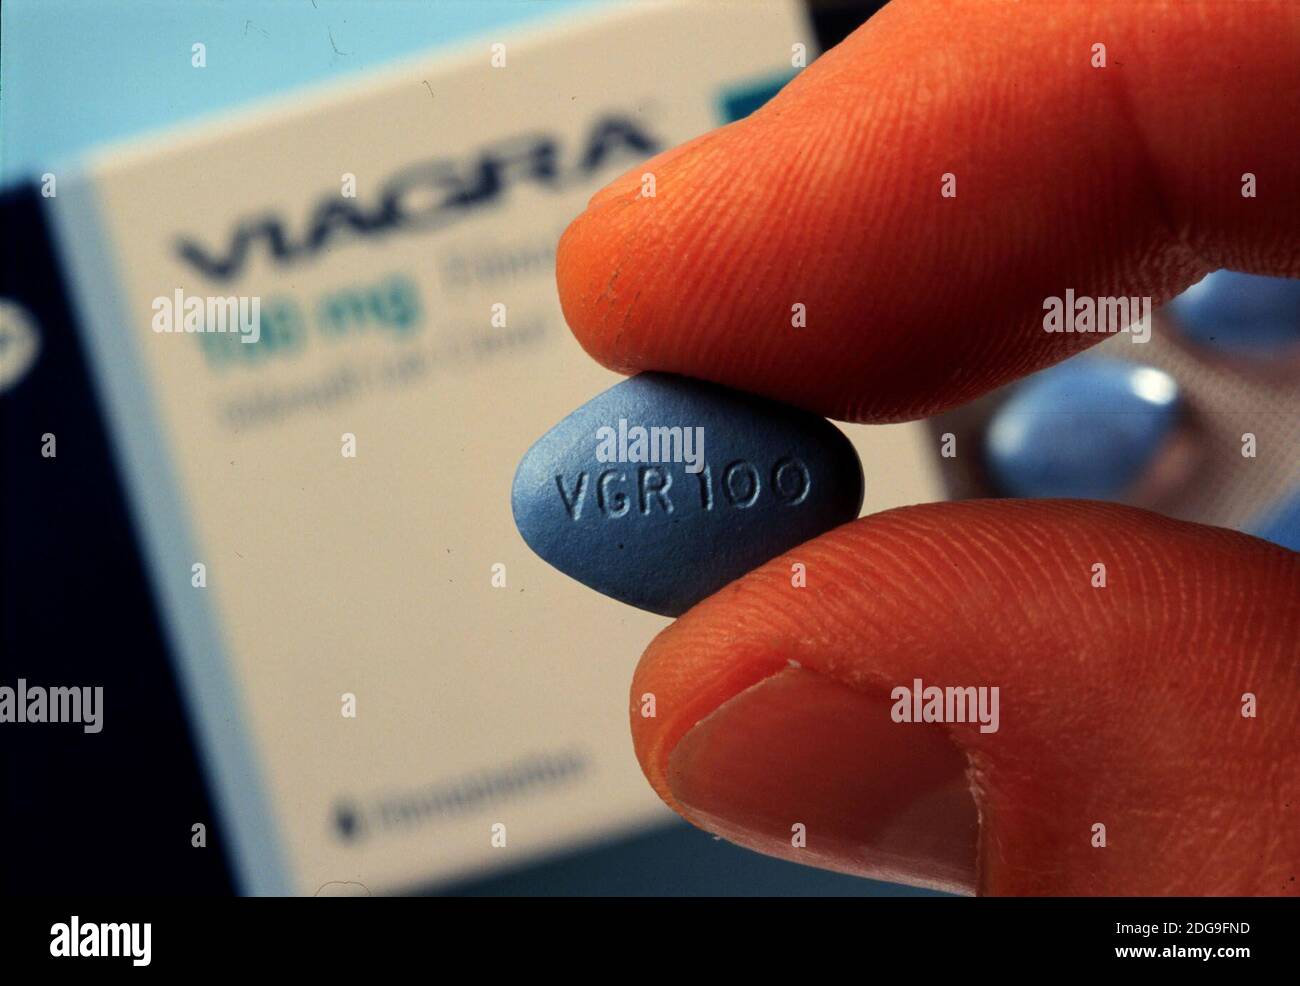 VIAGRA, im April 1998 brachte der US-Konzern Pfizer das potenzsteigernde  Mittel VIAGRA auf den Markt, Symbolfoto, 1999. VIAGRA, in April 1998, the  US group Pfizer launched the potency enhancing drug VIAGRA on